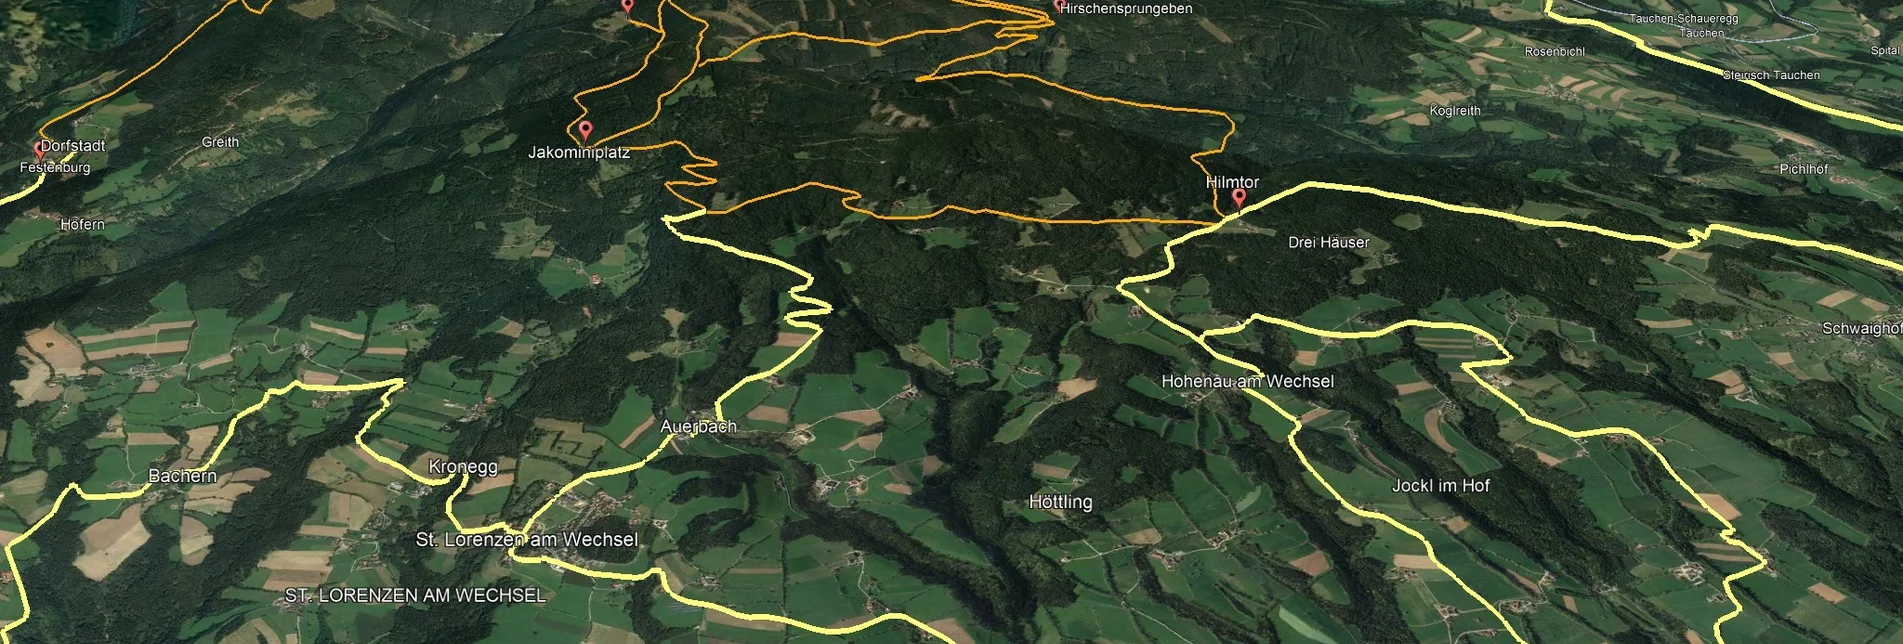 Mountain Biking PREVIEW Styrian Wexl Trails - Lafnitz feeder route via Rohrbach to Hilmtor - Touren-Impression #1 | © Verein Tourismusentwicklung Steirischer Wechsel